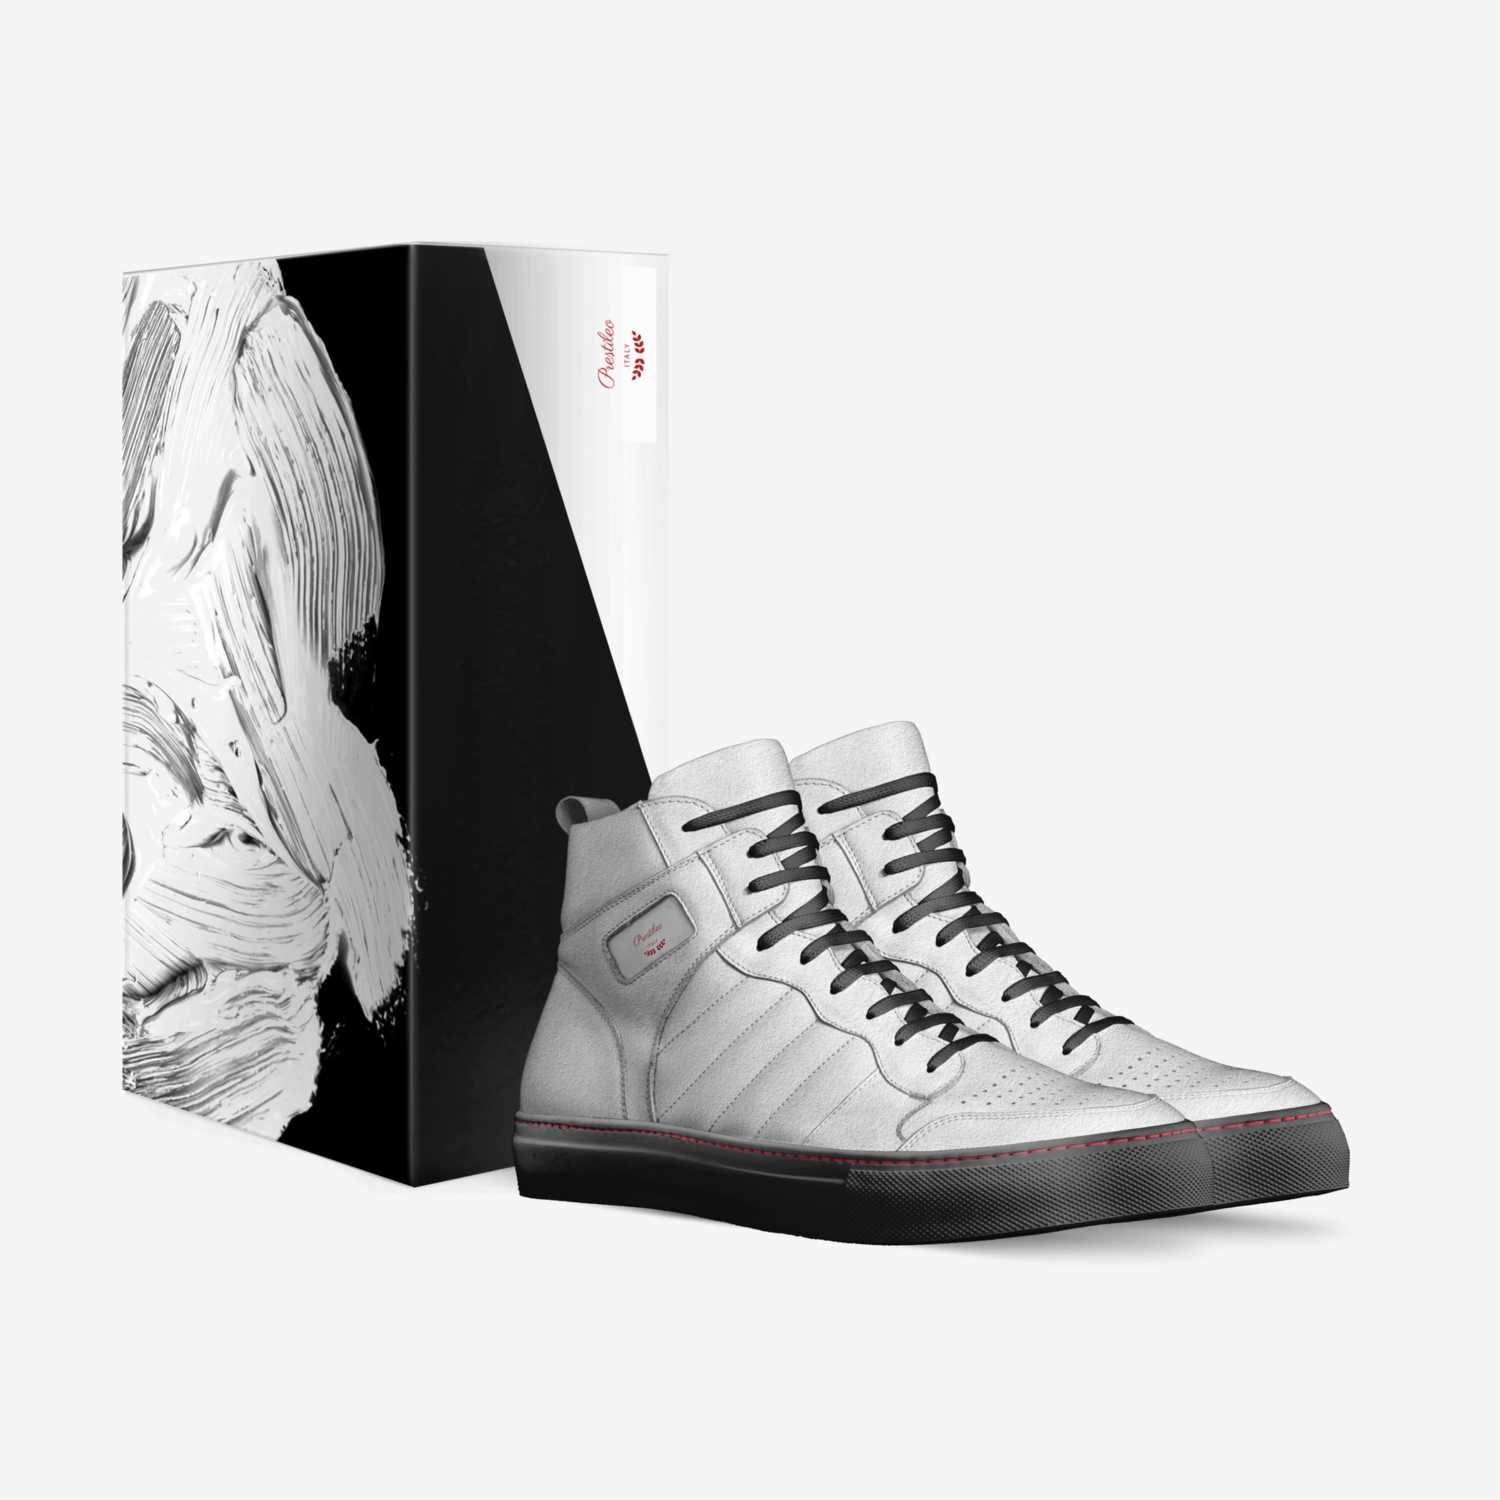 Prestileo custom made in Italy shoes by Prestileo8 | Box view